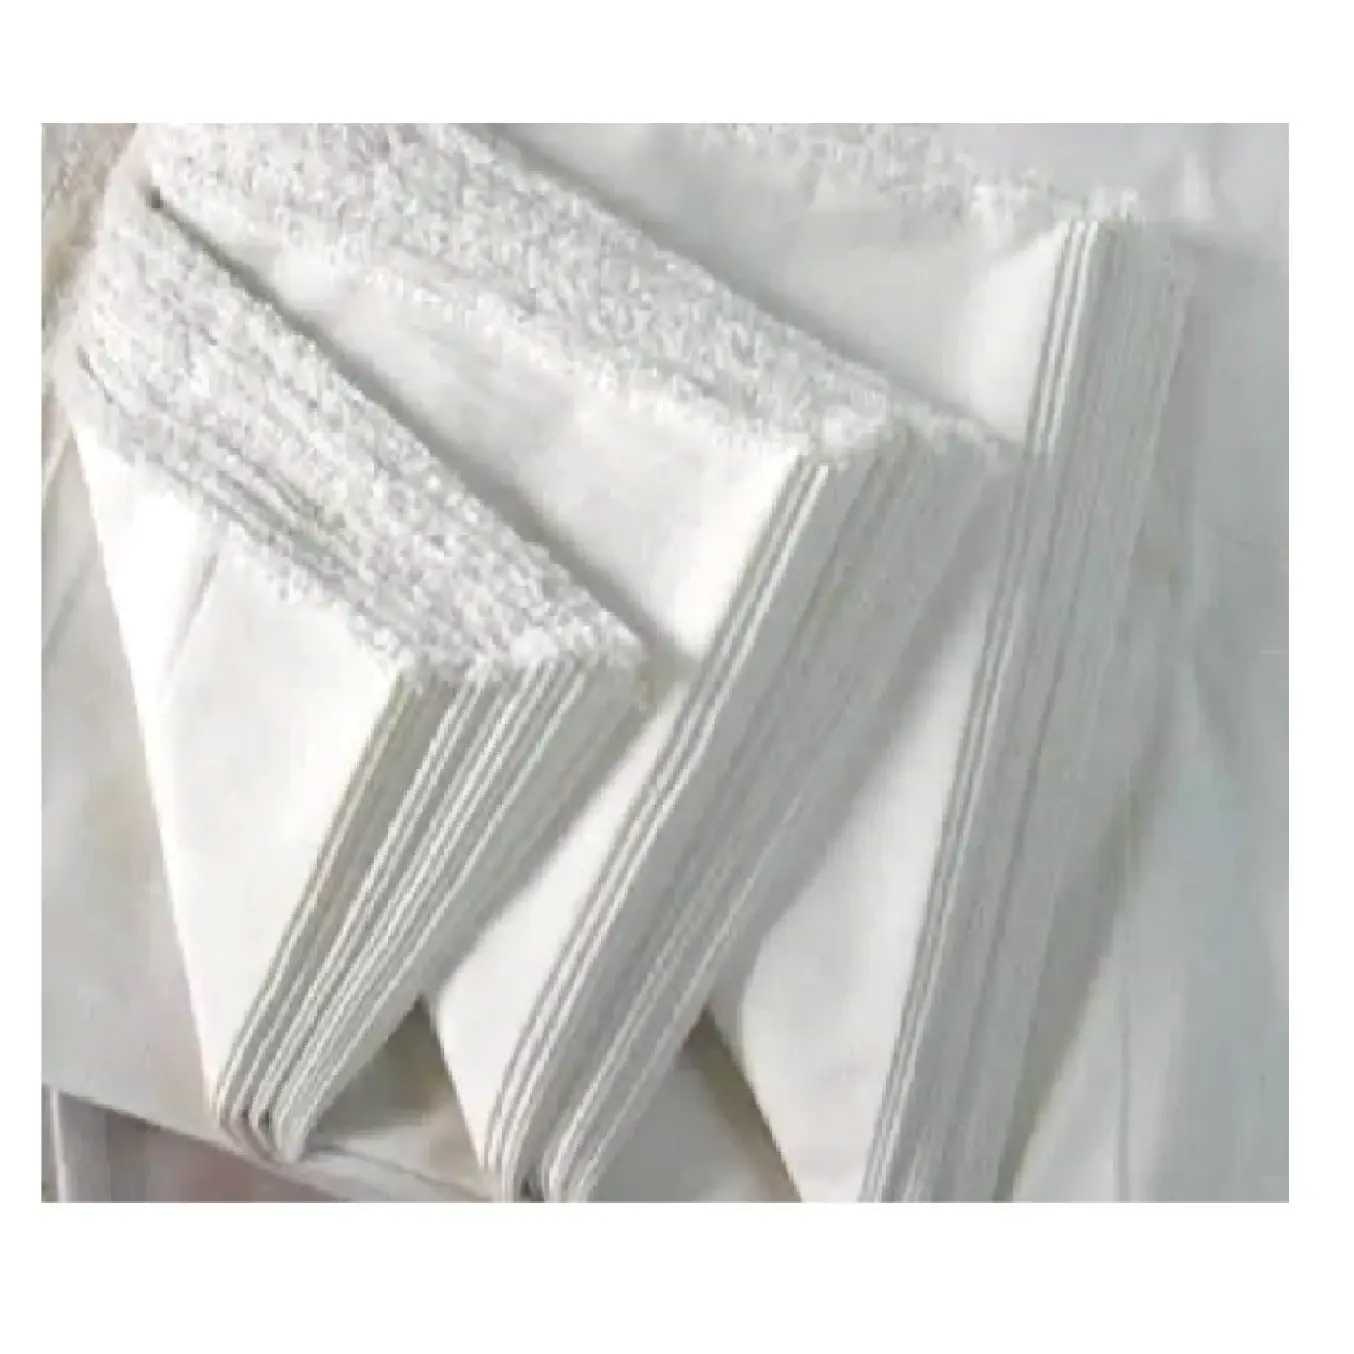 प्रीमियम गुणवत्ता वाला सूती ग्रे कपड़ा कपड़ा उद्योग में एक प्रमुख सामग्री है जिसका उपयोग व्यापक रेंज के उत्पादों के निर्माण के लिए किया जाता है